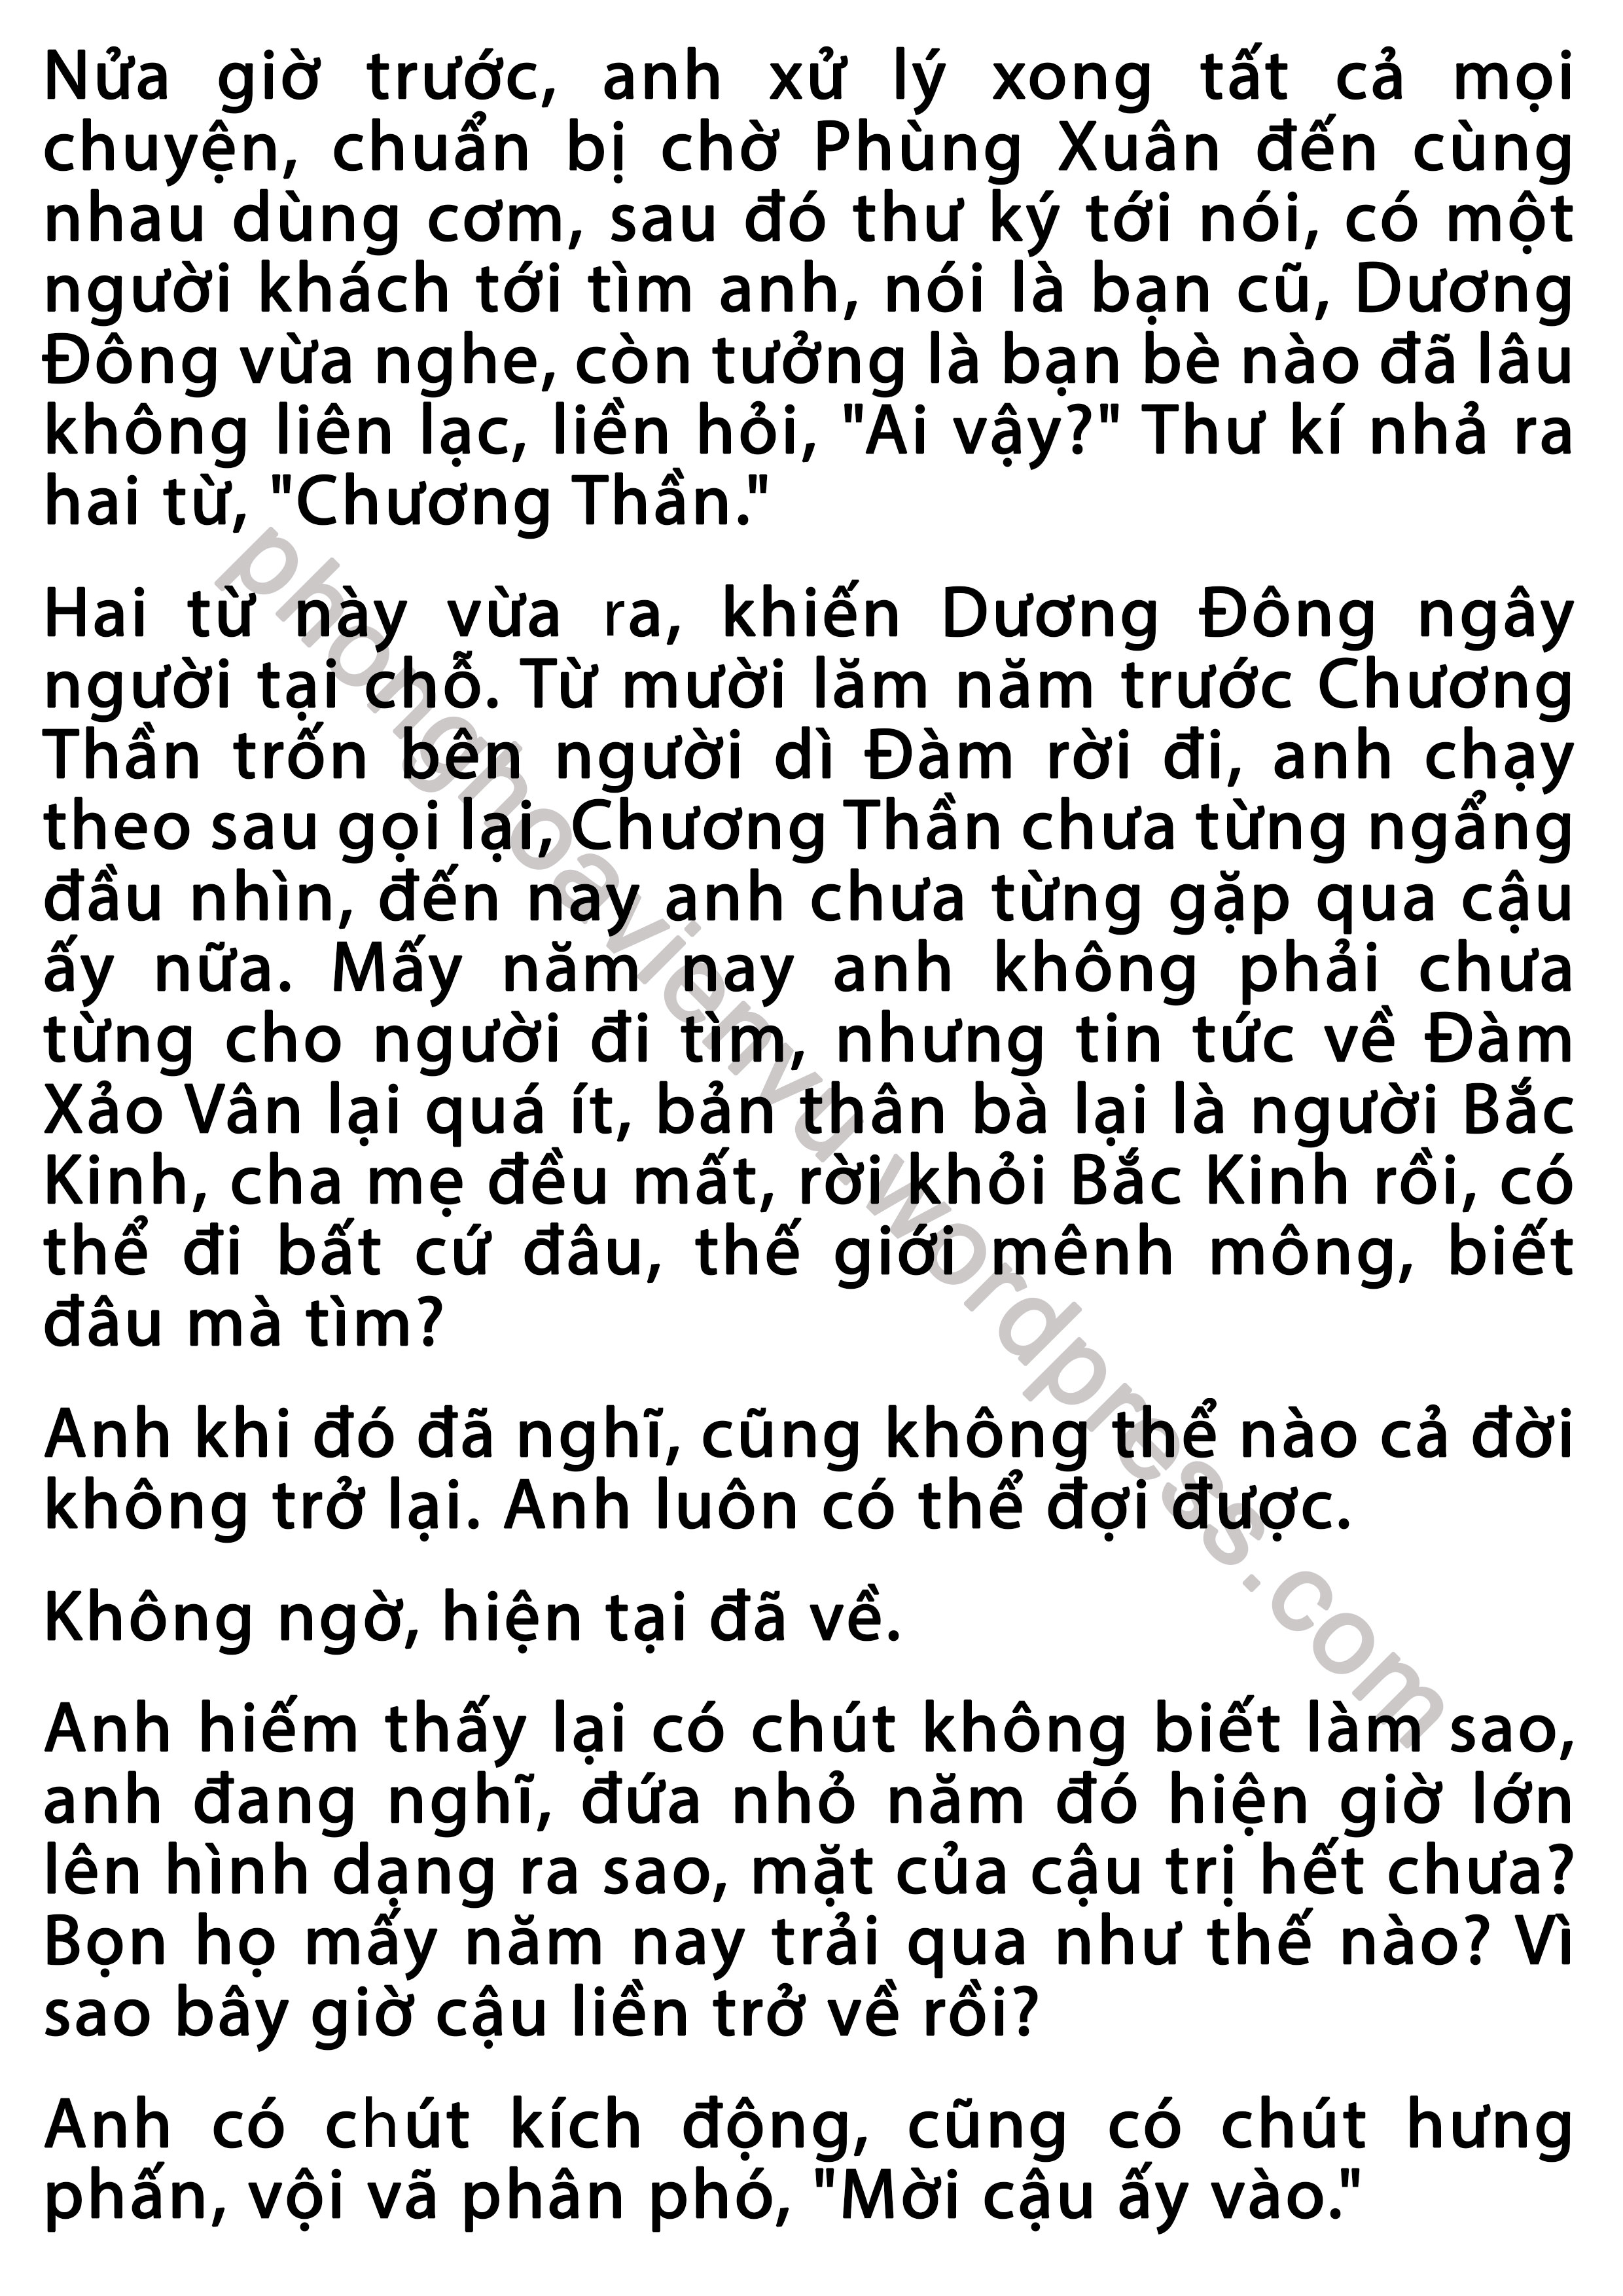 phung-xuan-43-pic7